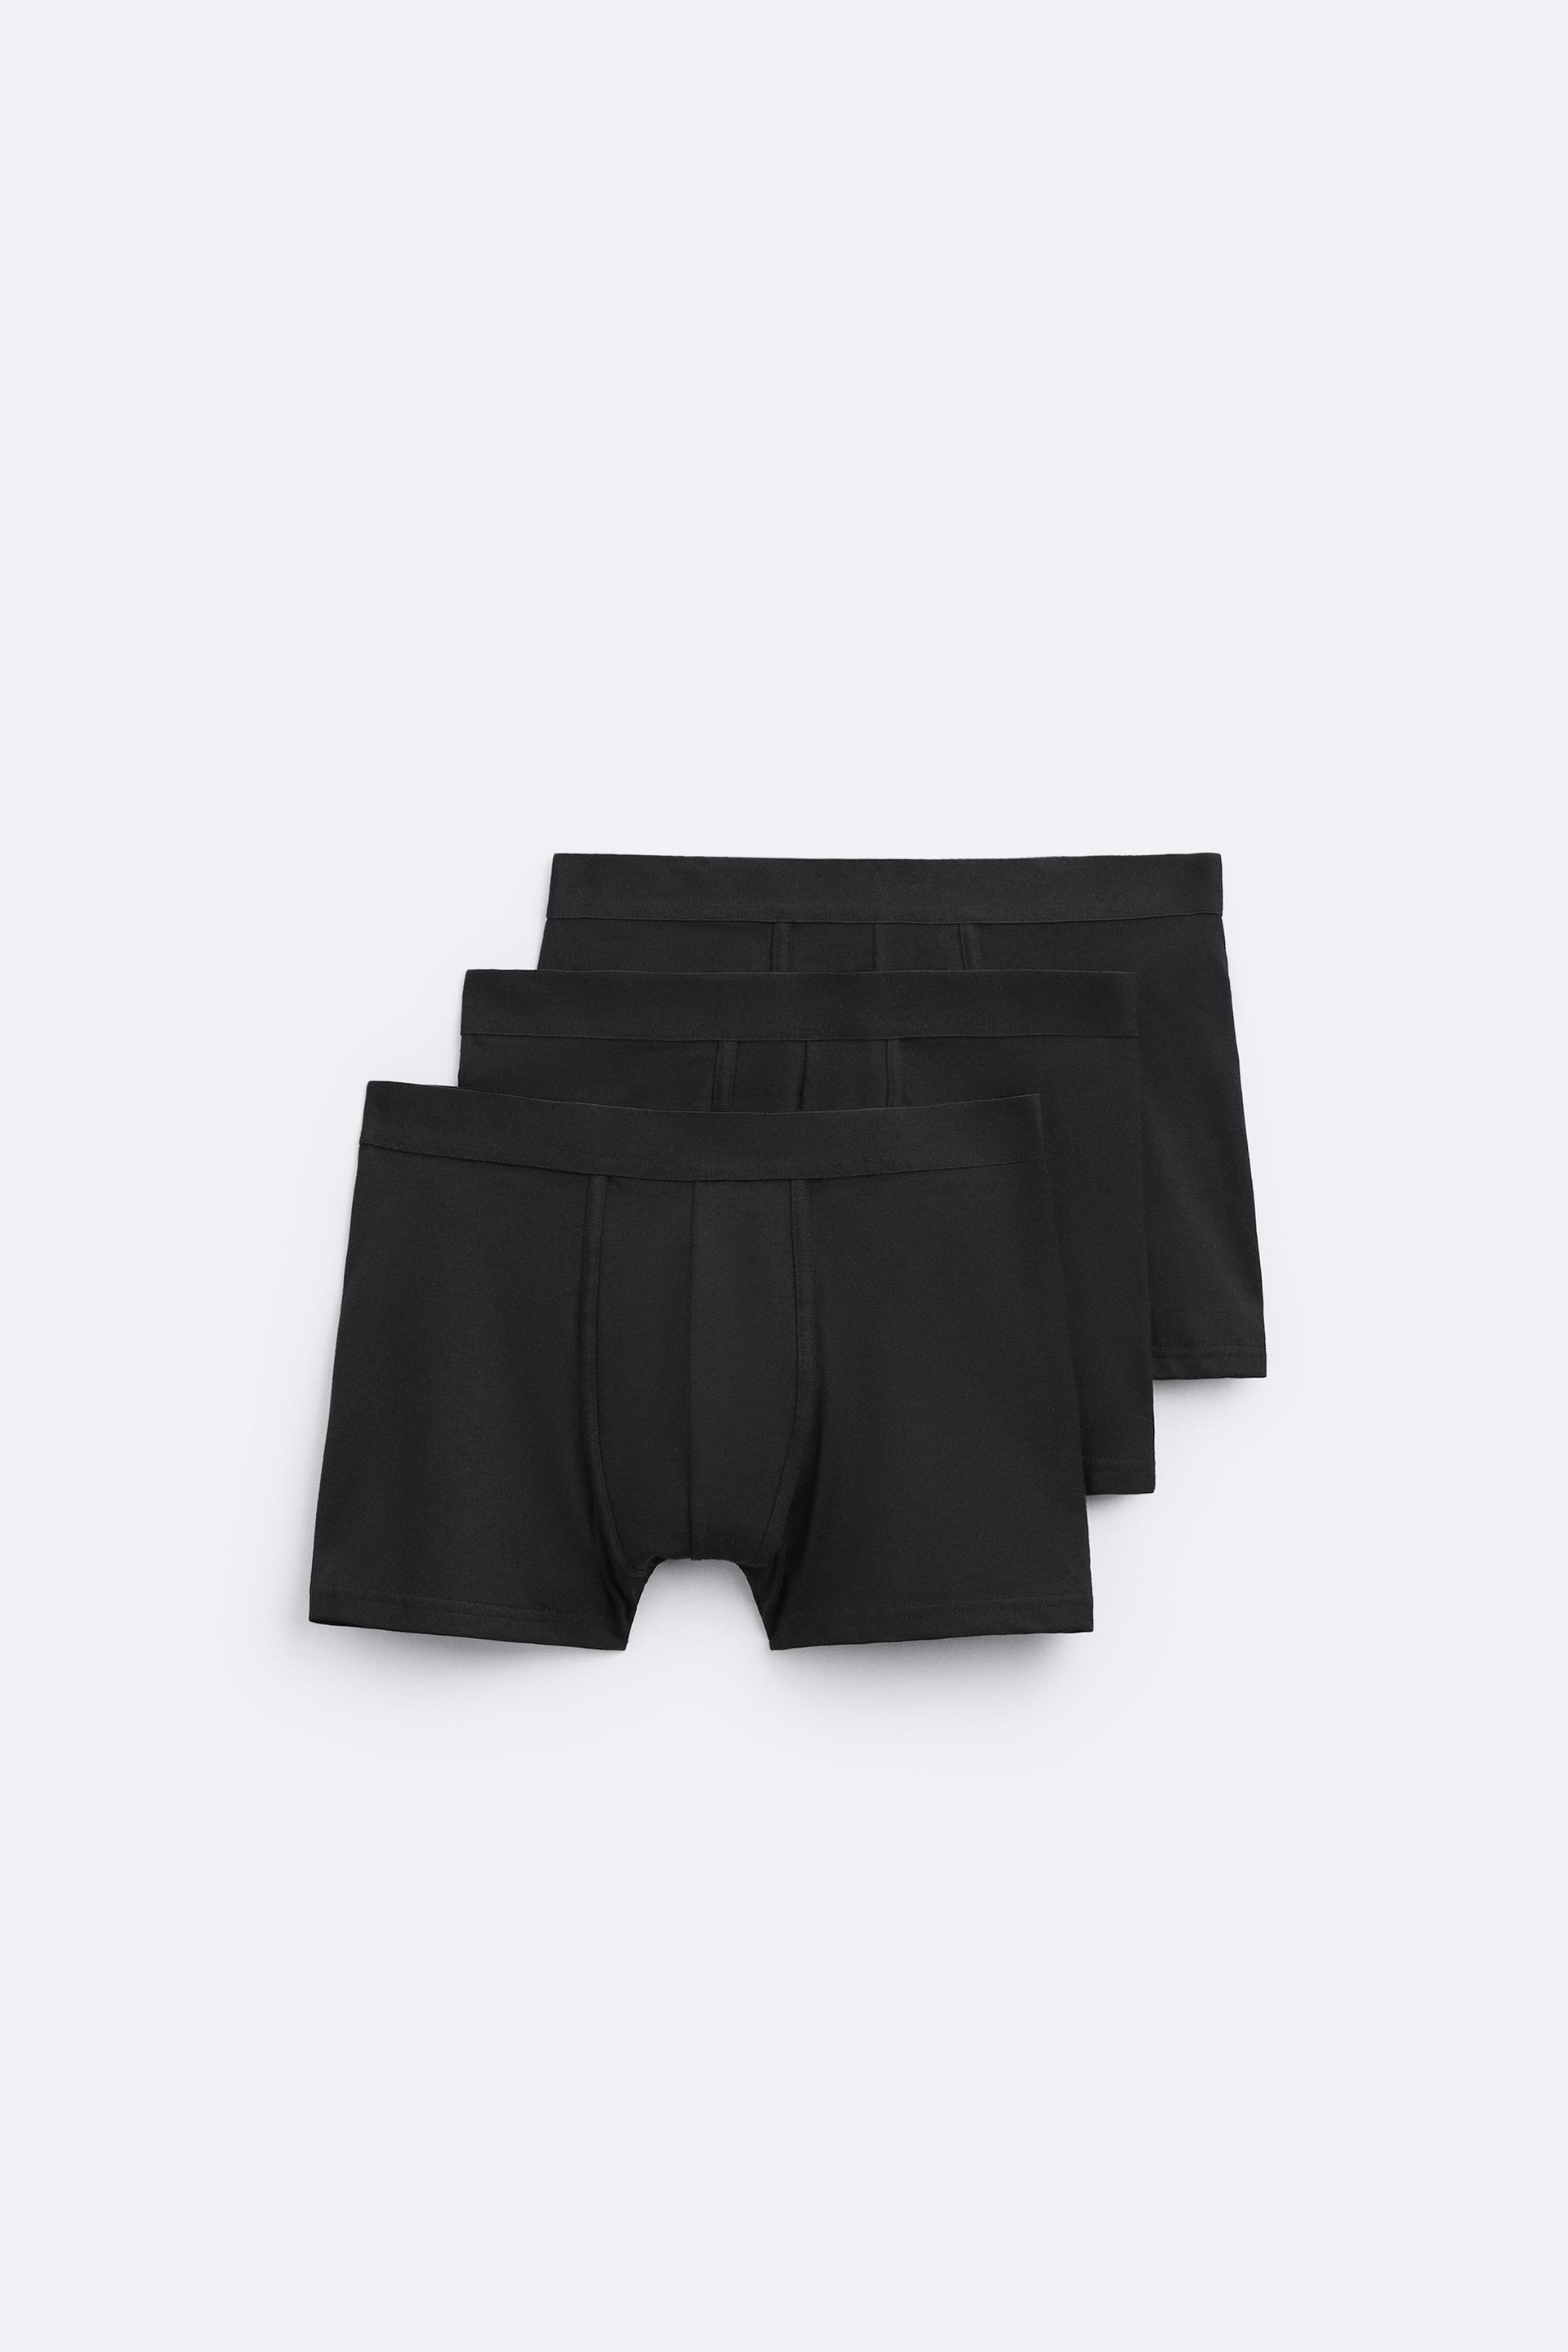 Zara underwear (boxer / trunk), fit M size, Men's Fashion, Bottoms